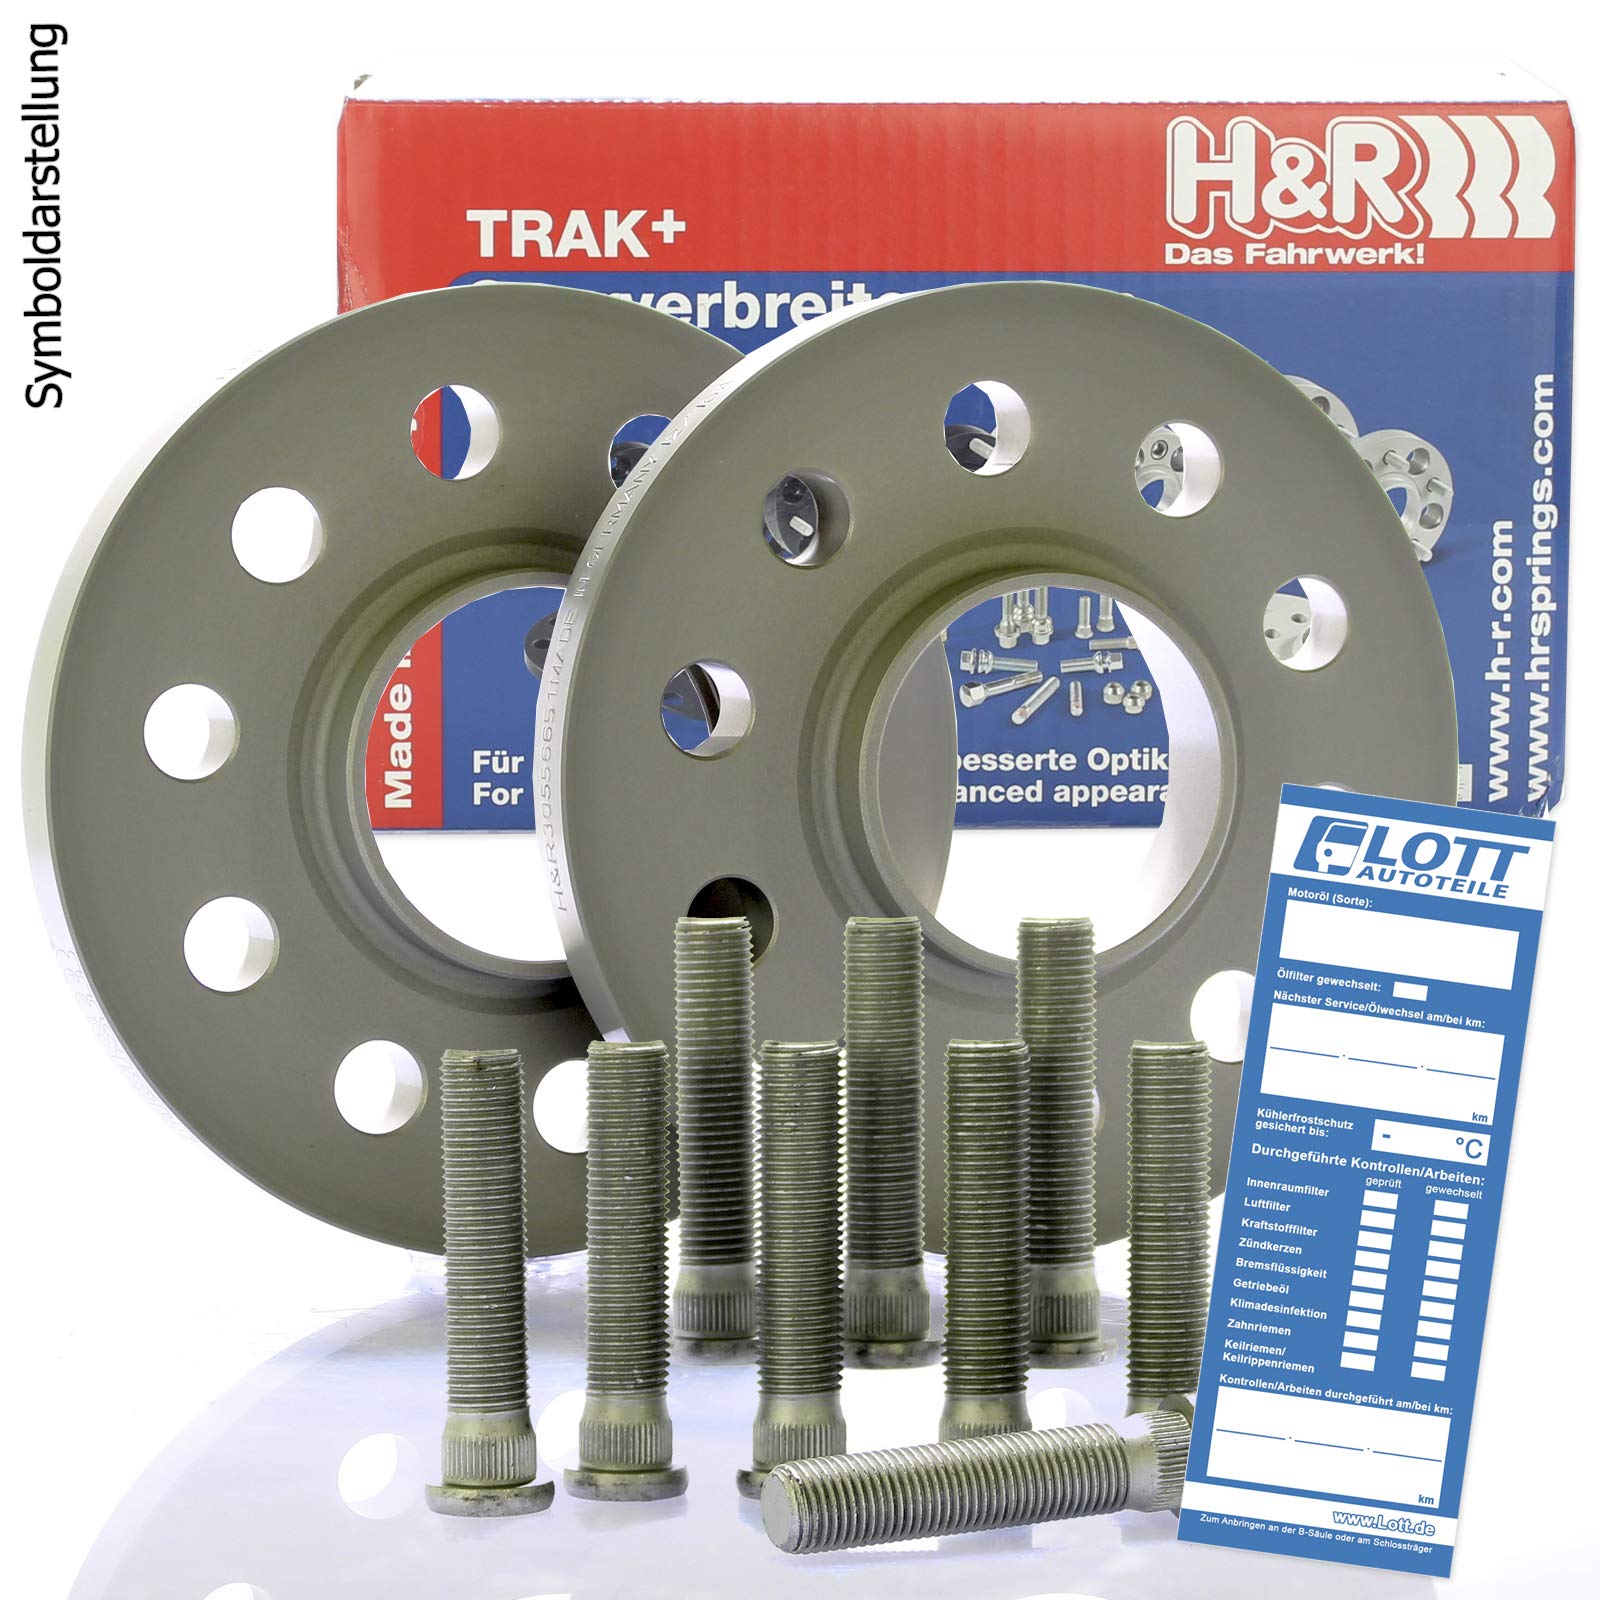 H&R DRA Spurplatten Spurverbreiterung Distanzscheibe Ø63,3 5x108 30mm // 2x15mm + Bremsenreiniger von Lott-Autoteile